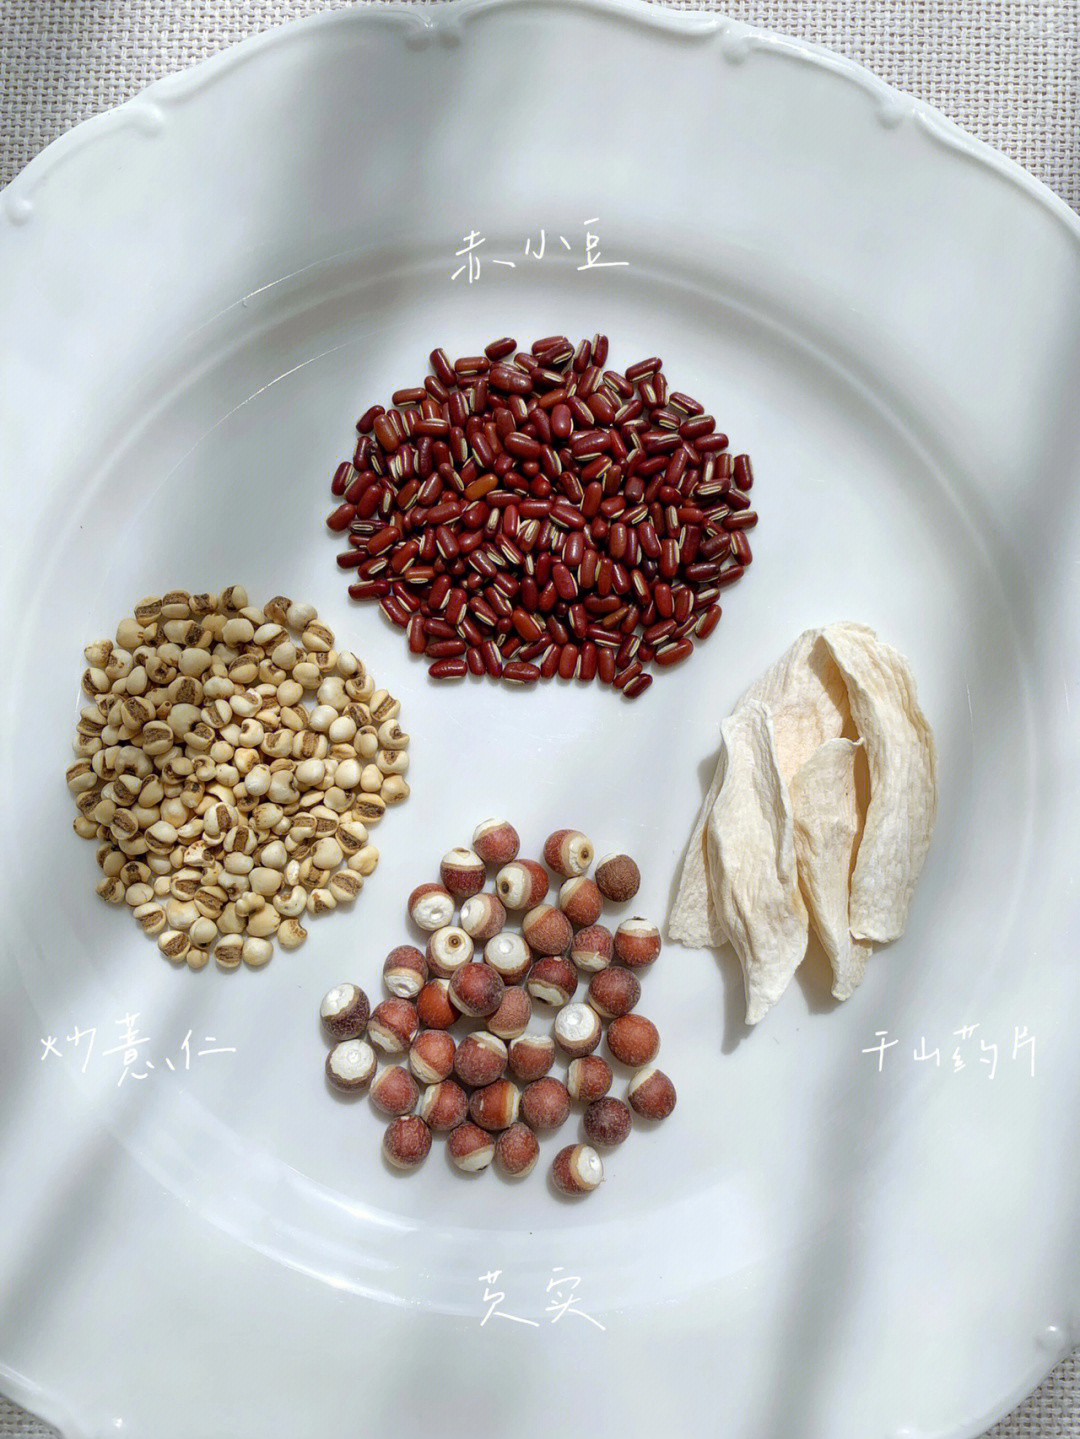 五红汤加薏米图片